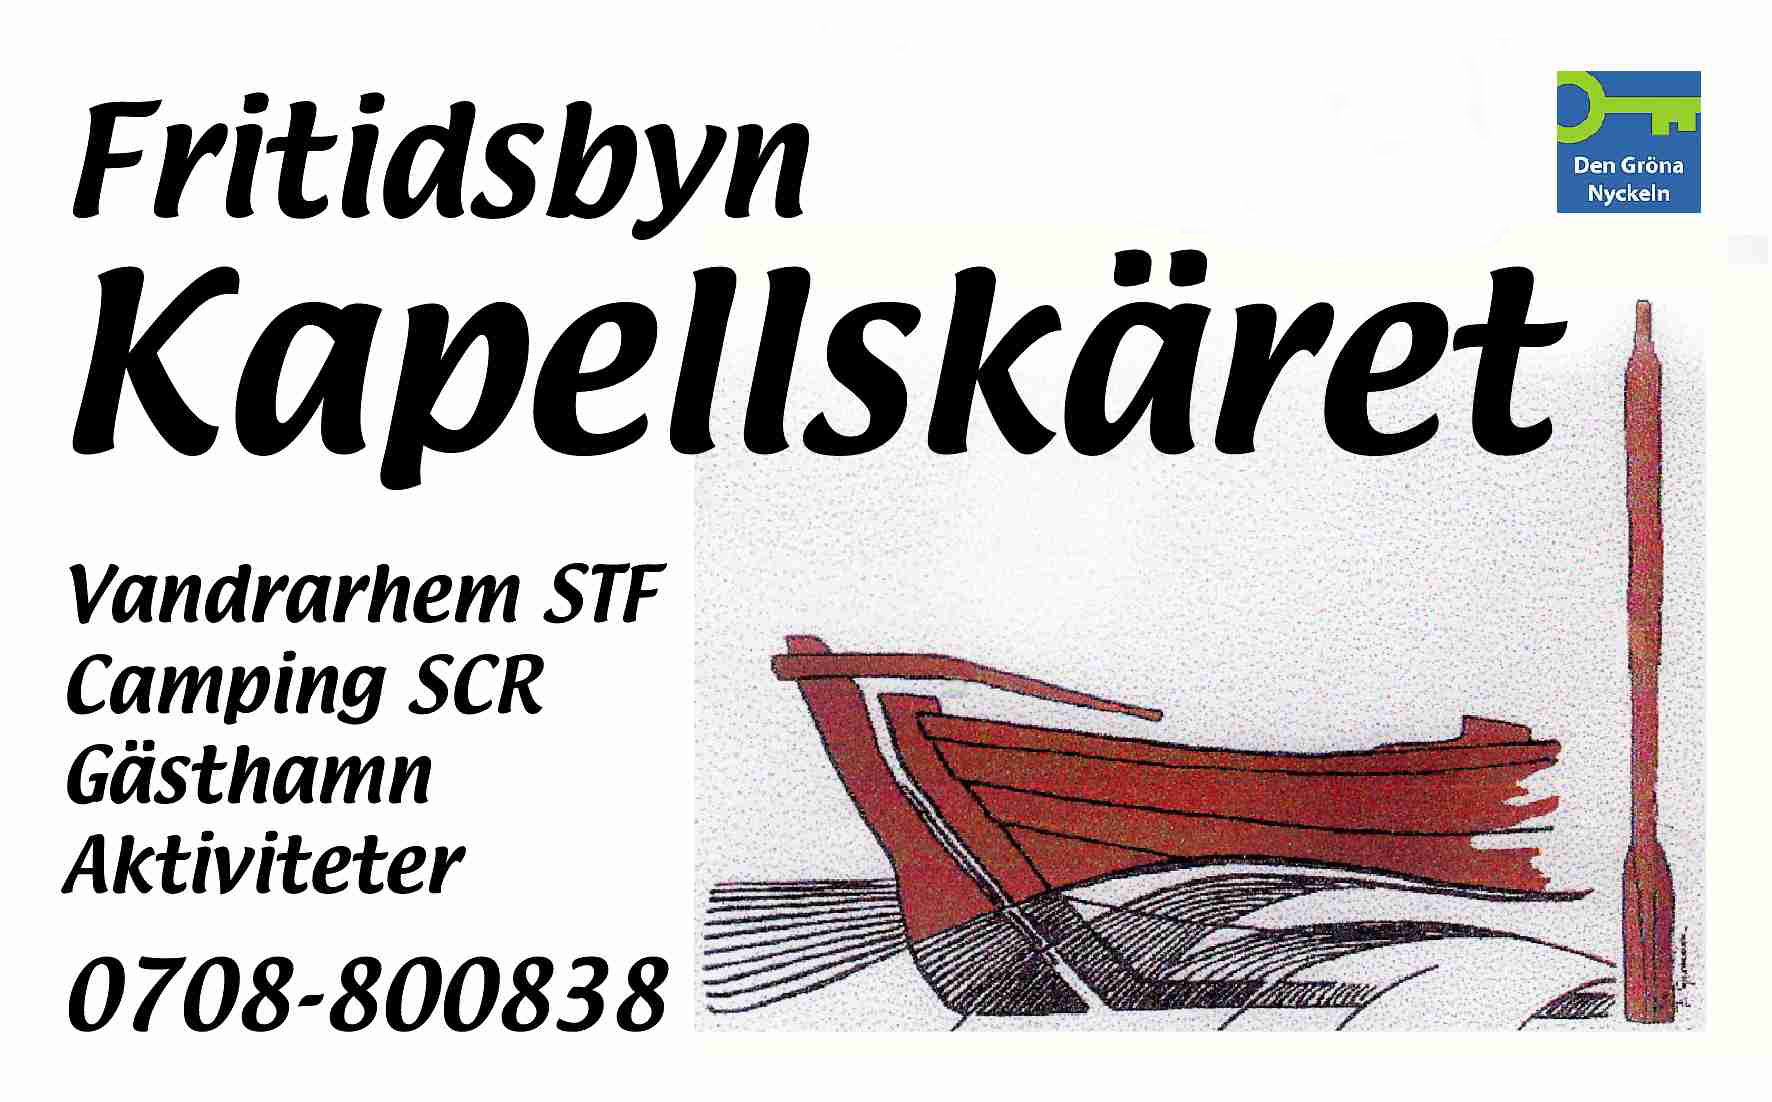 Fritidsbyn Kapellskärets Camping, Vandrarhem & Gästhamn